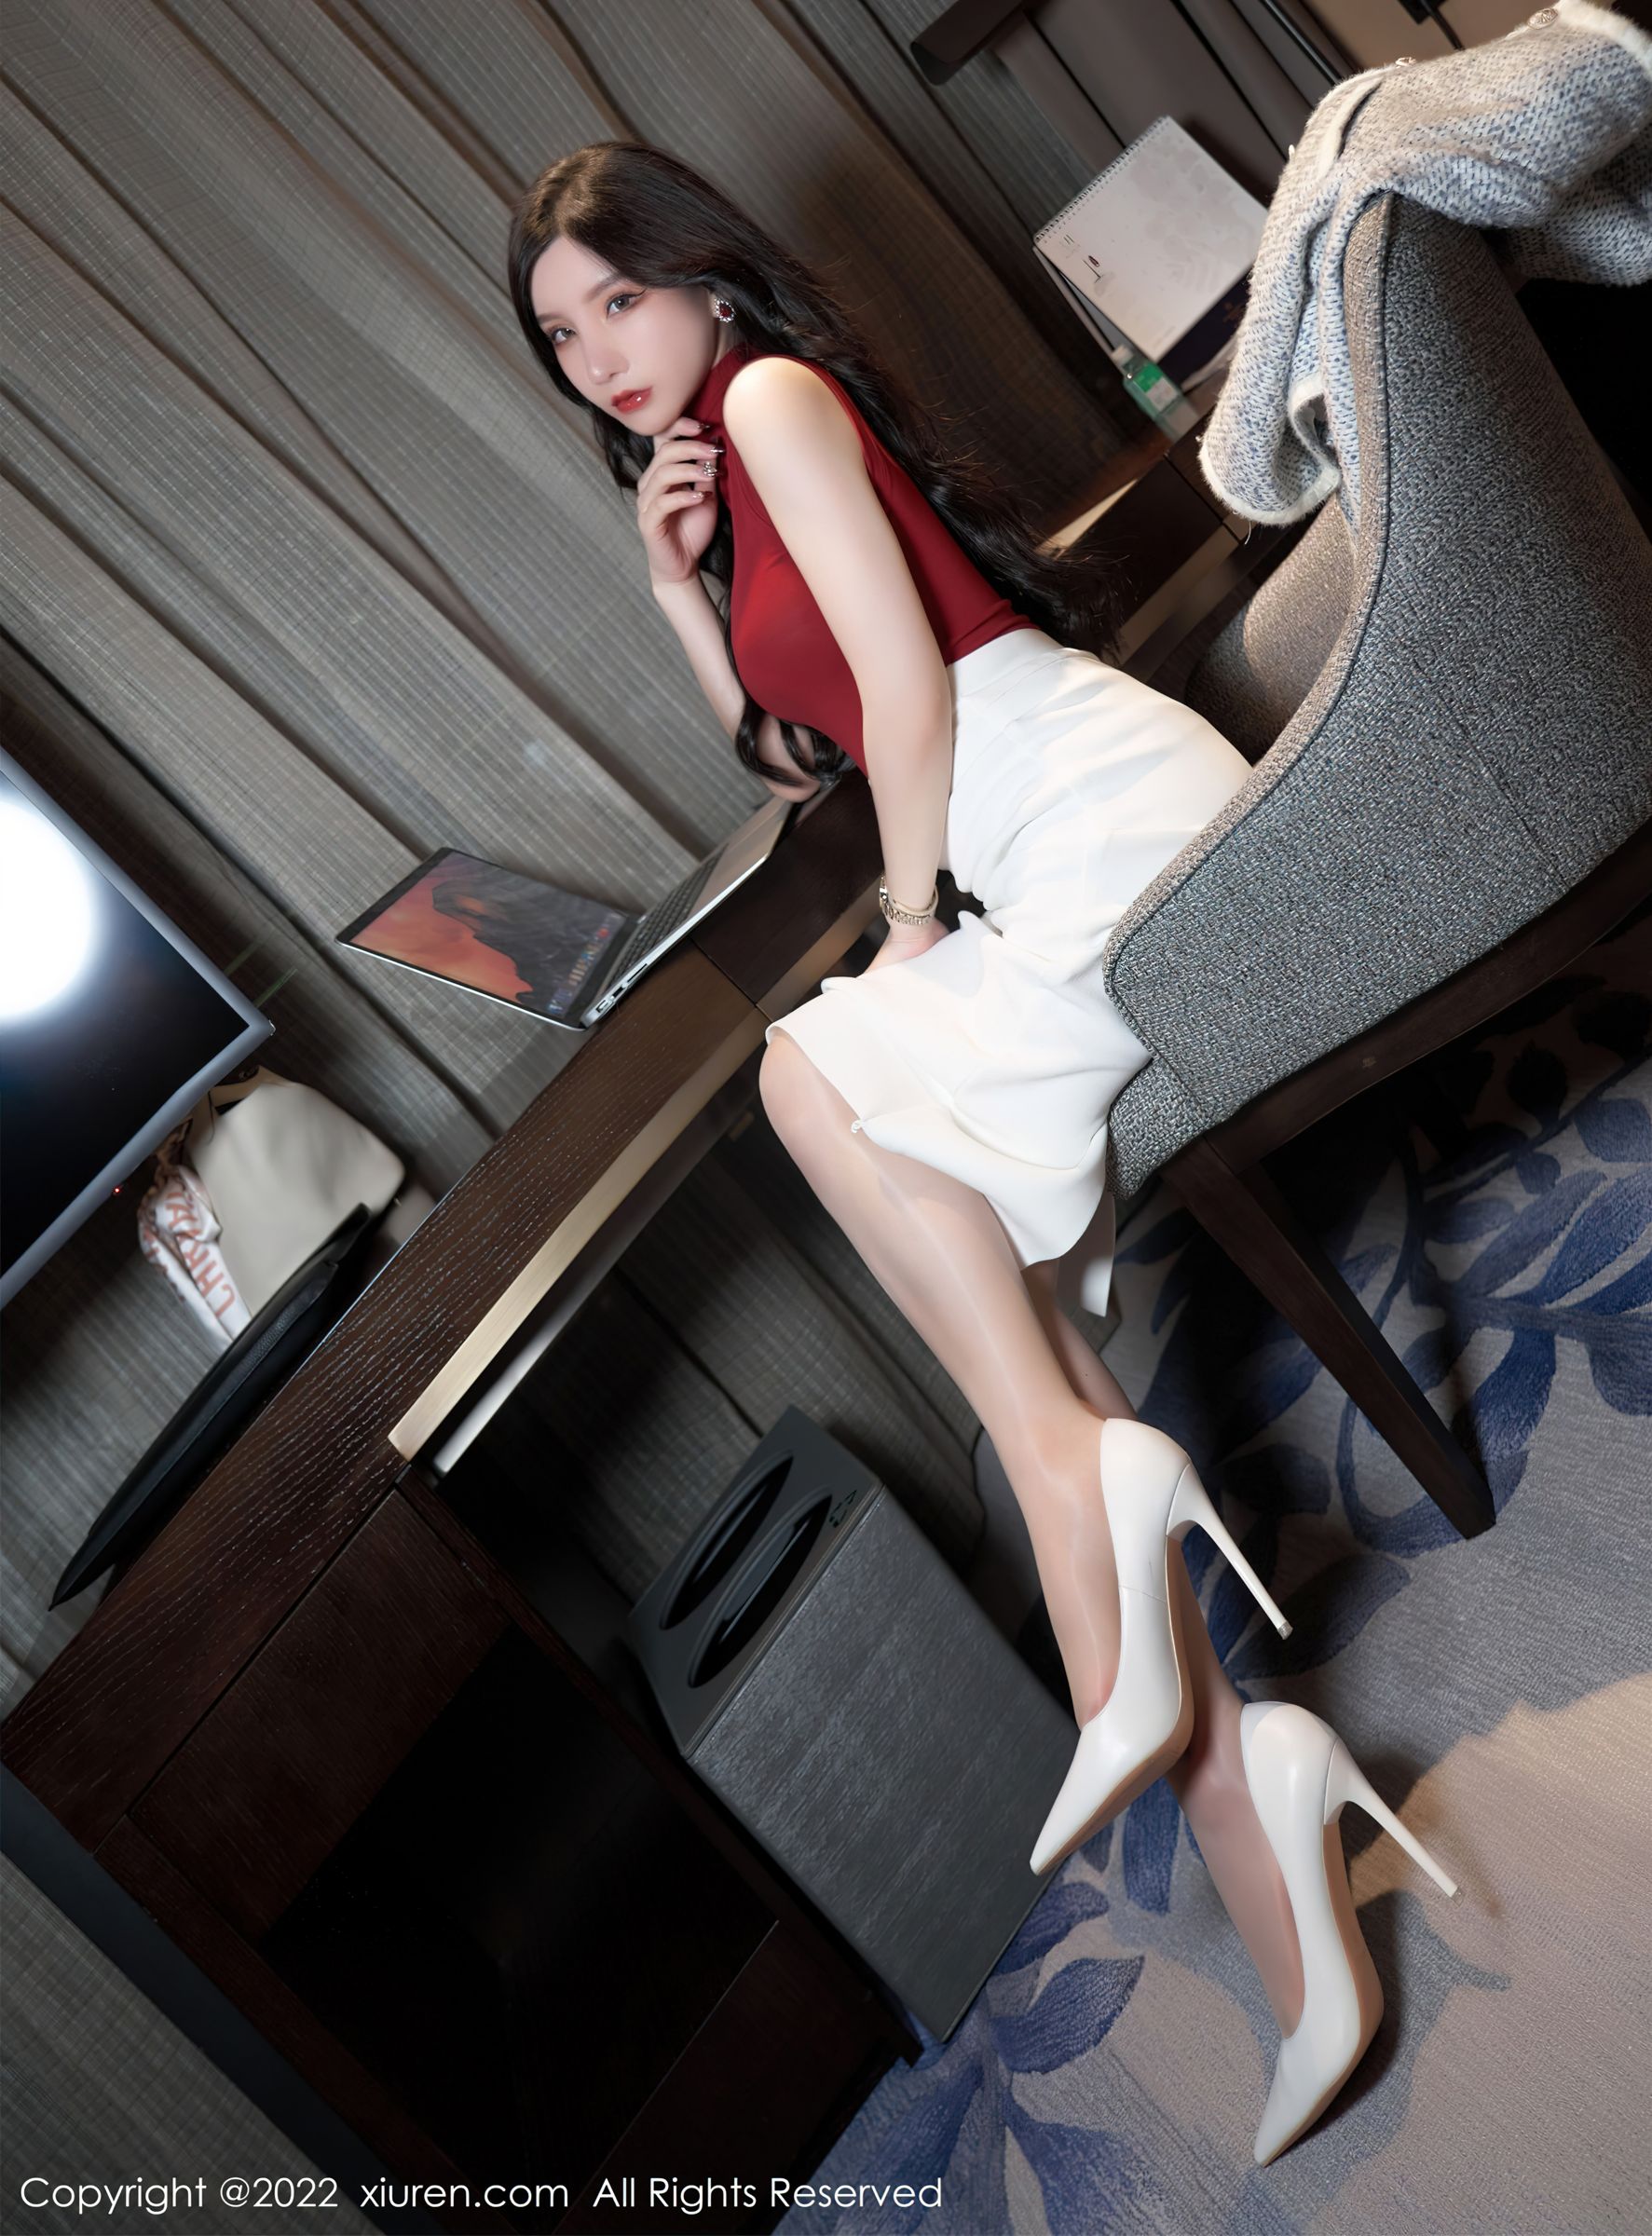 [XiuRen秀人网]-No.4728-周于希Sally-女秘书服饰白色长裙红色上衣搭配原色丝袜白色高跟鞋-套图之家